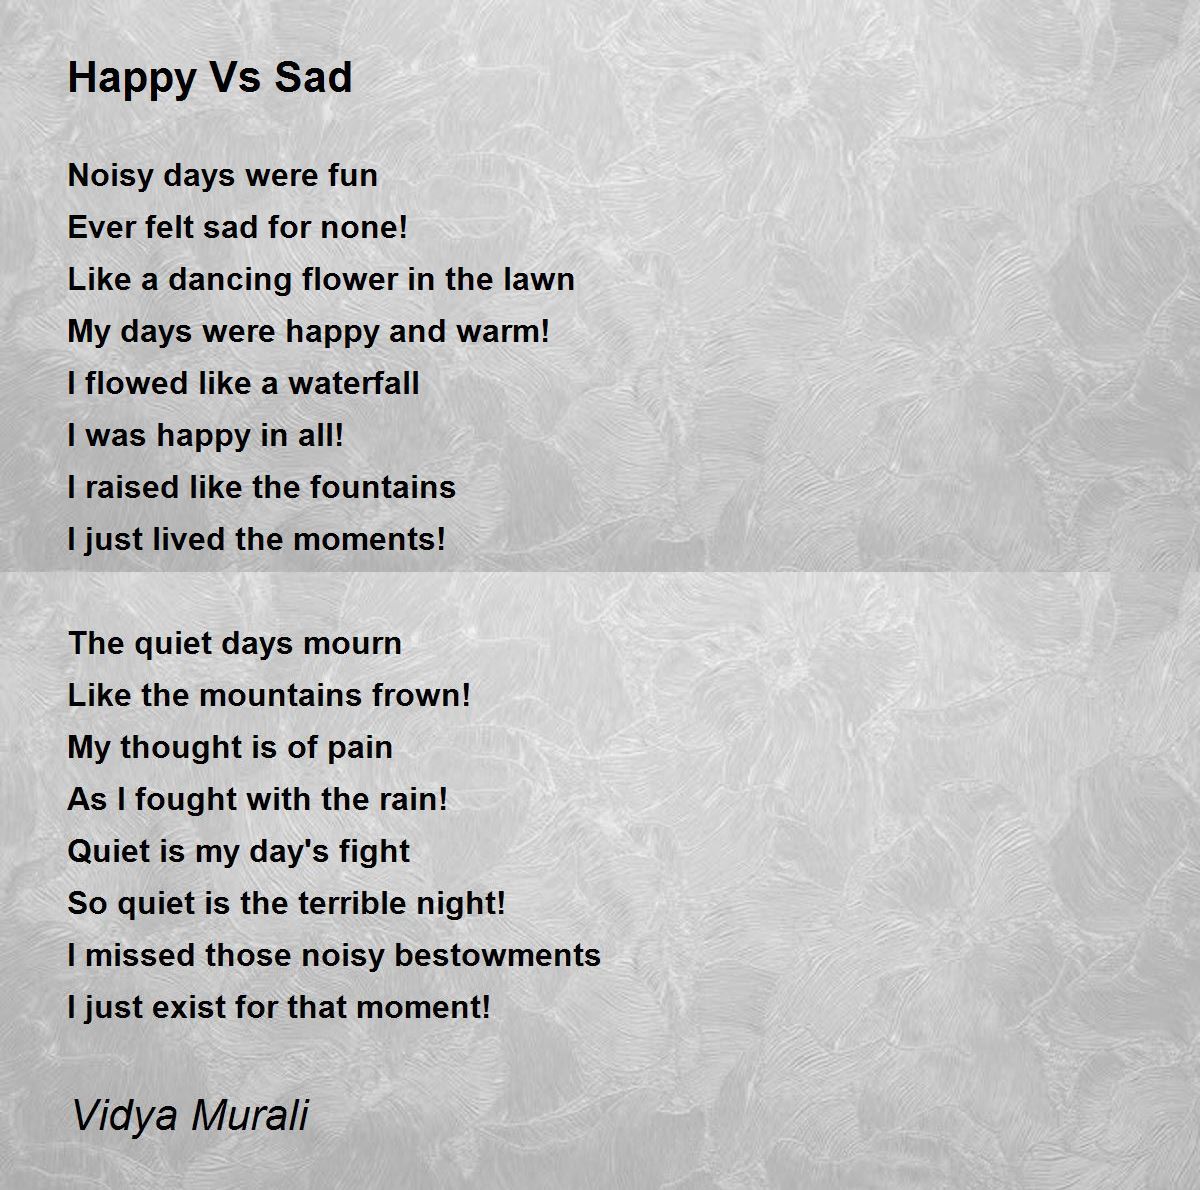 Happy Vs Sad - Happy Vs Sad Poem by Vidya Murali